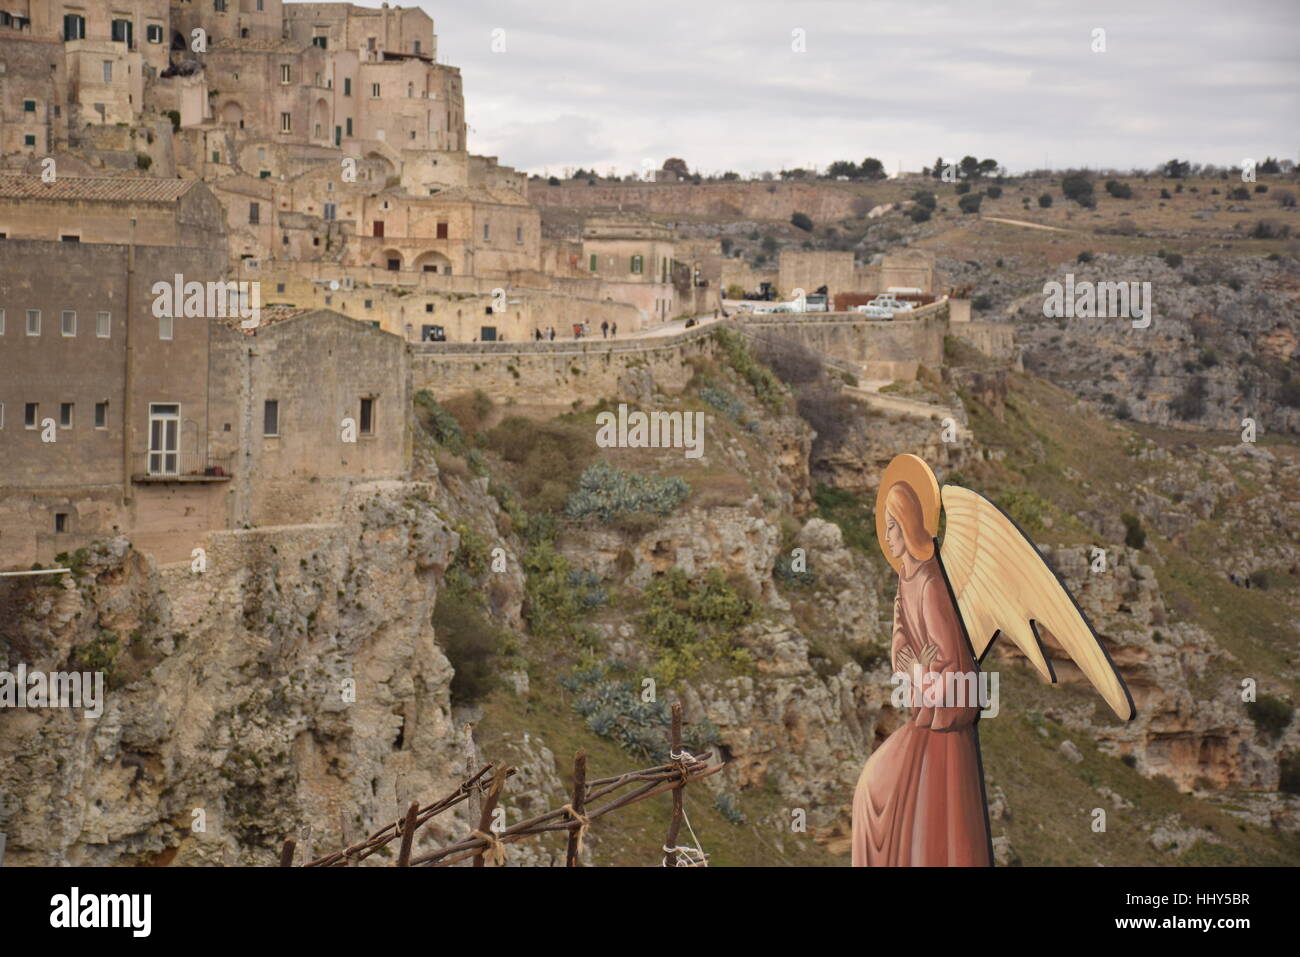 Vue panoramique sur les pierres de Matera (Sassi di Matera), Capitale européenne de la Culture 2019 04 janvier, 2017 - Italie Banque D'Images